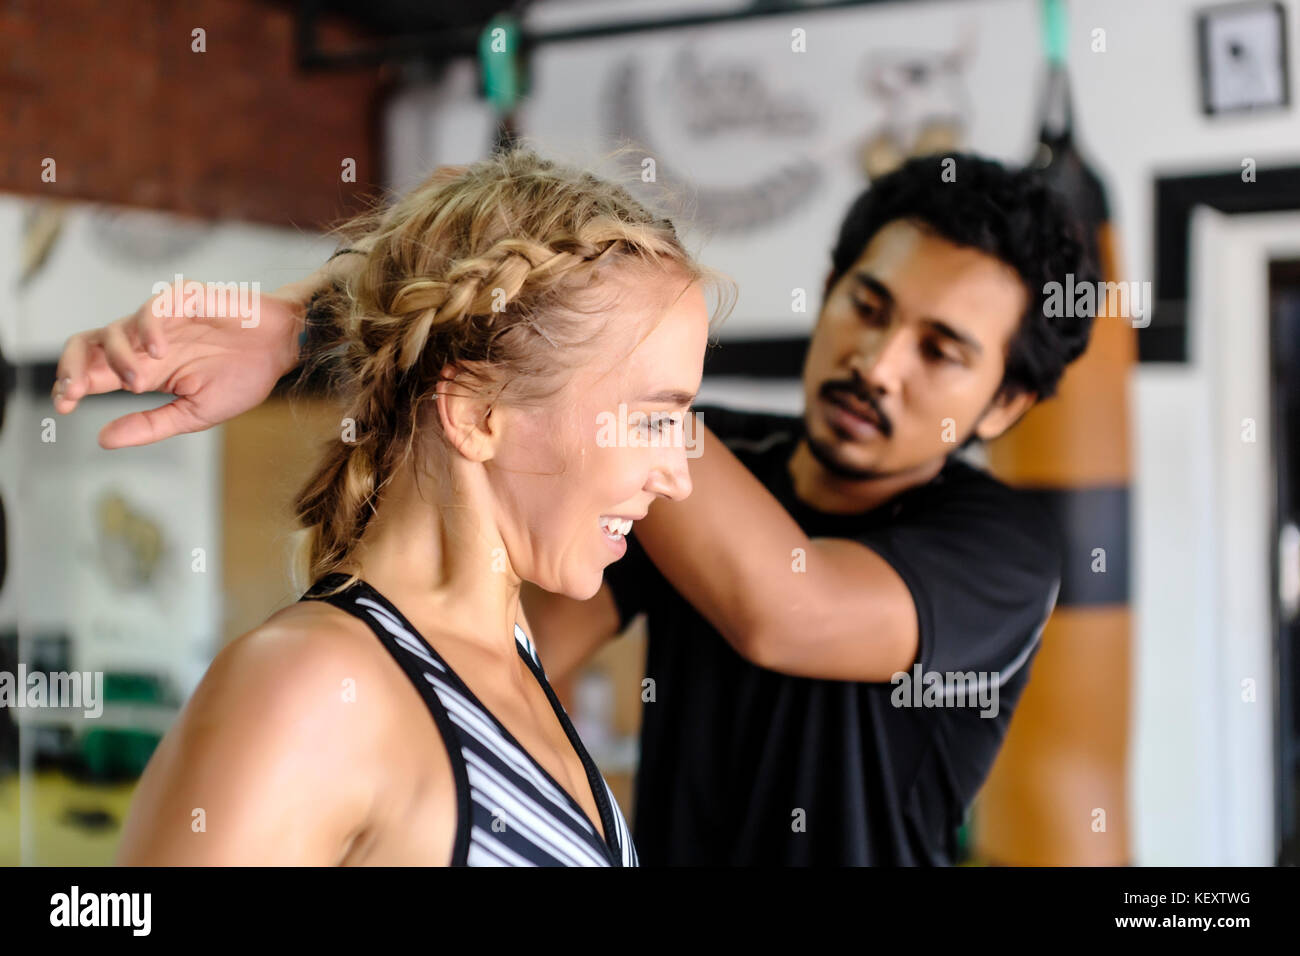 Foto der jungen Frau die Hilfe erstreckt sich von Trainer im Fitnessstudio, Seminyak, Bali, Indonesien Stockfoto